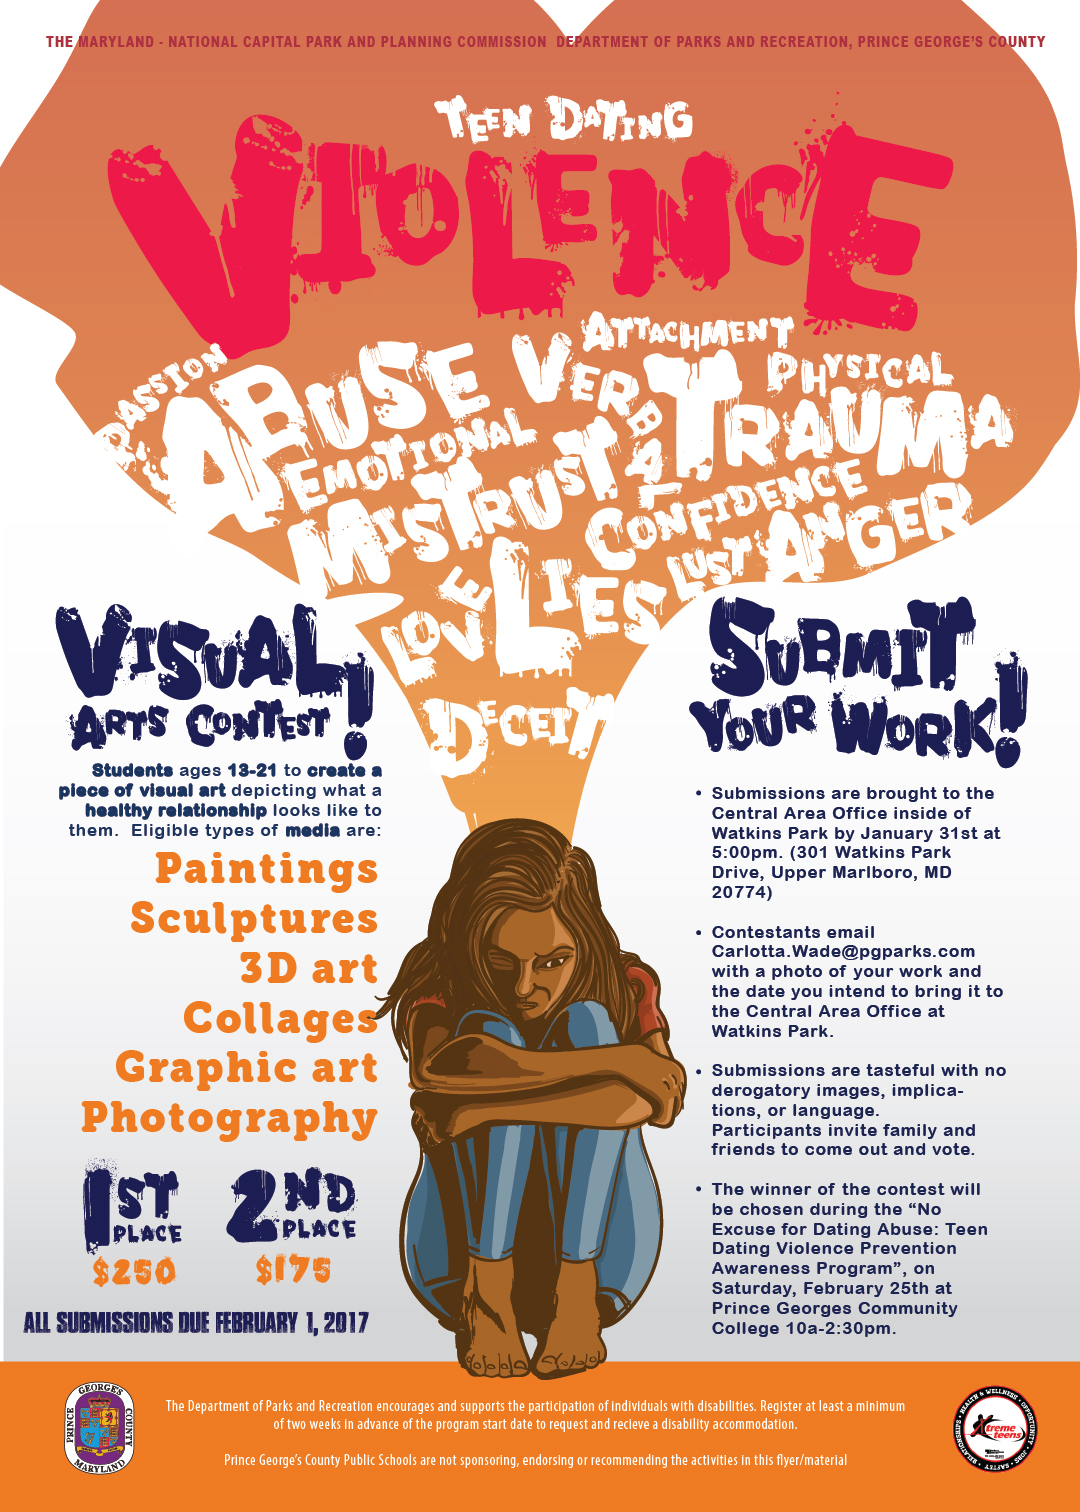 Call For Art For Teen Dating Violence Prevention Awareness Program